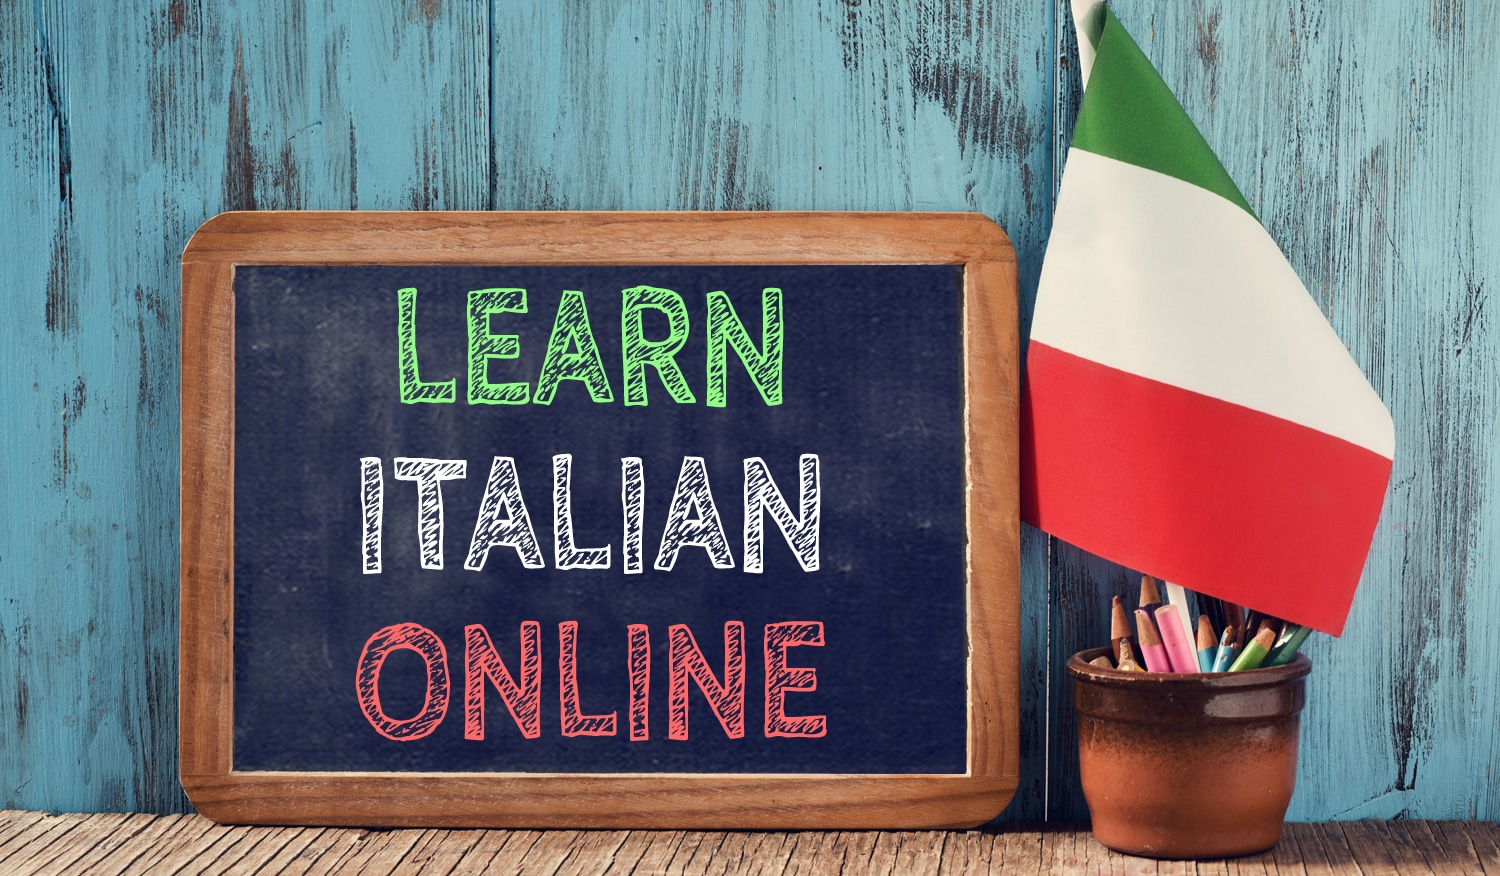 Imparare l’italiano: applicazioni e siti che potrebbero aiutarti